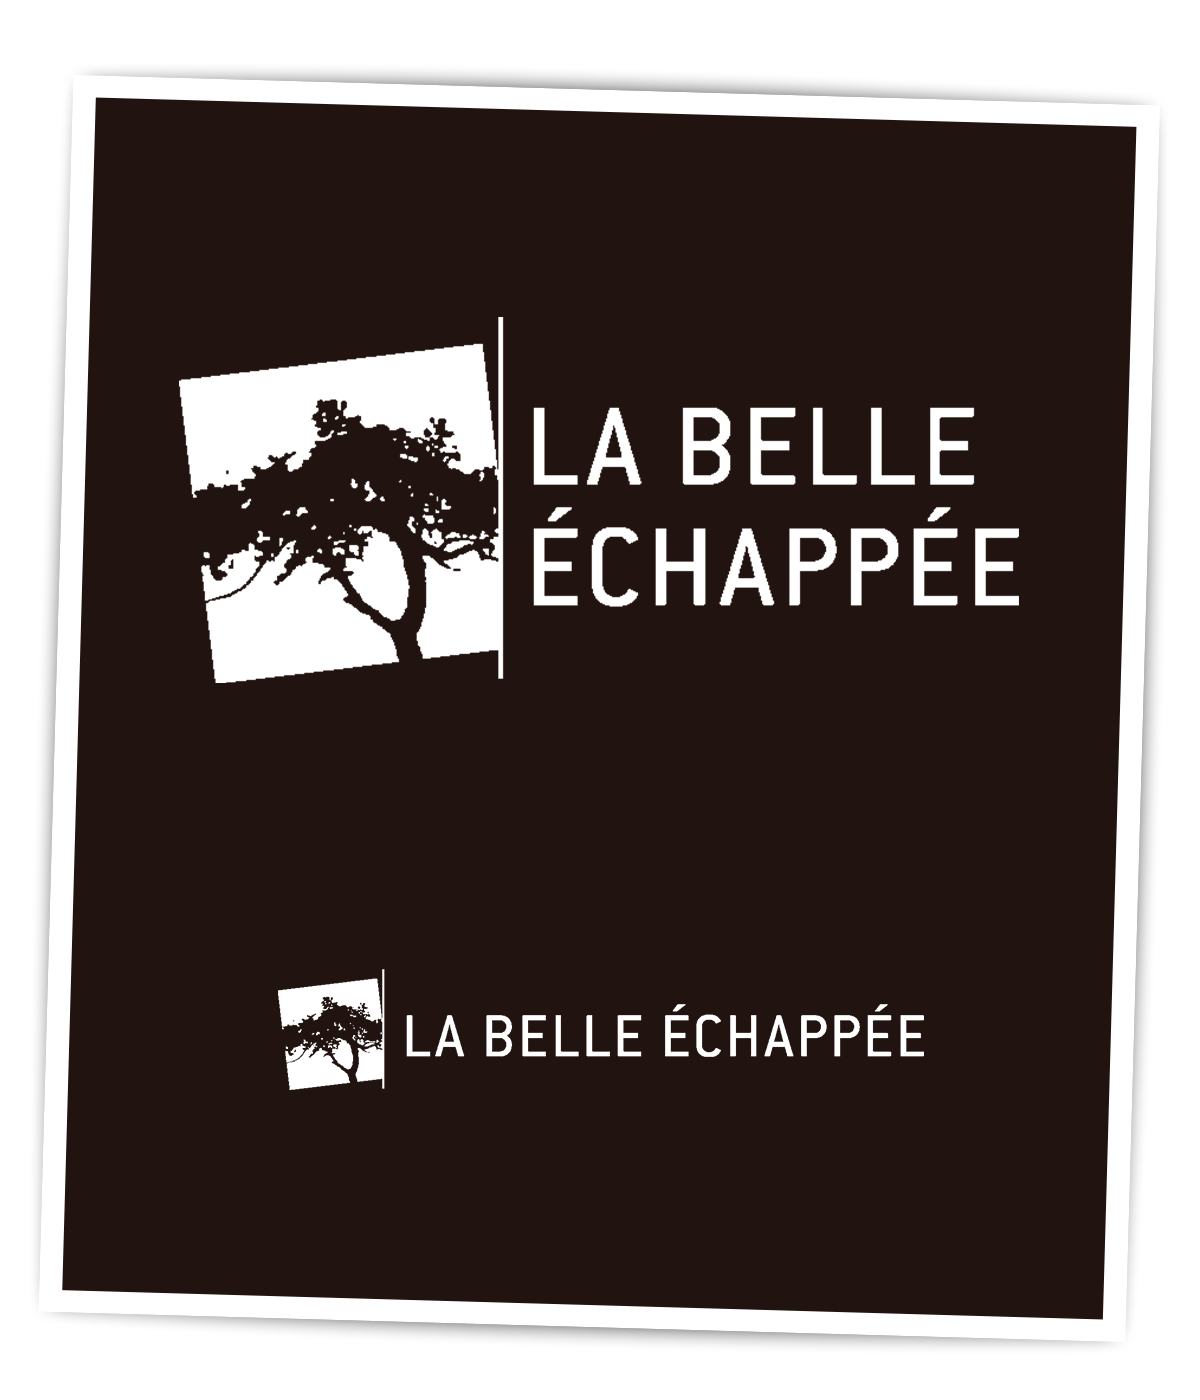 Nouveau logo créé pour La Belle Echappée par Caramel & Paprika - Versions blanches sur fond noir